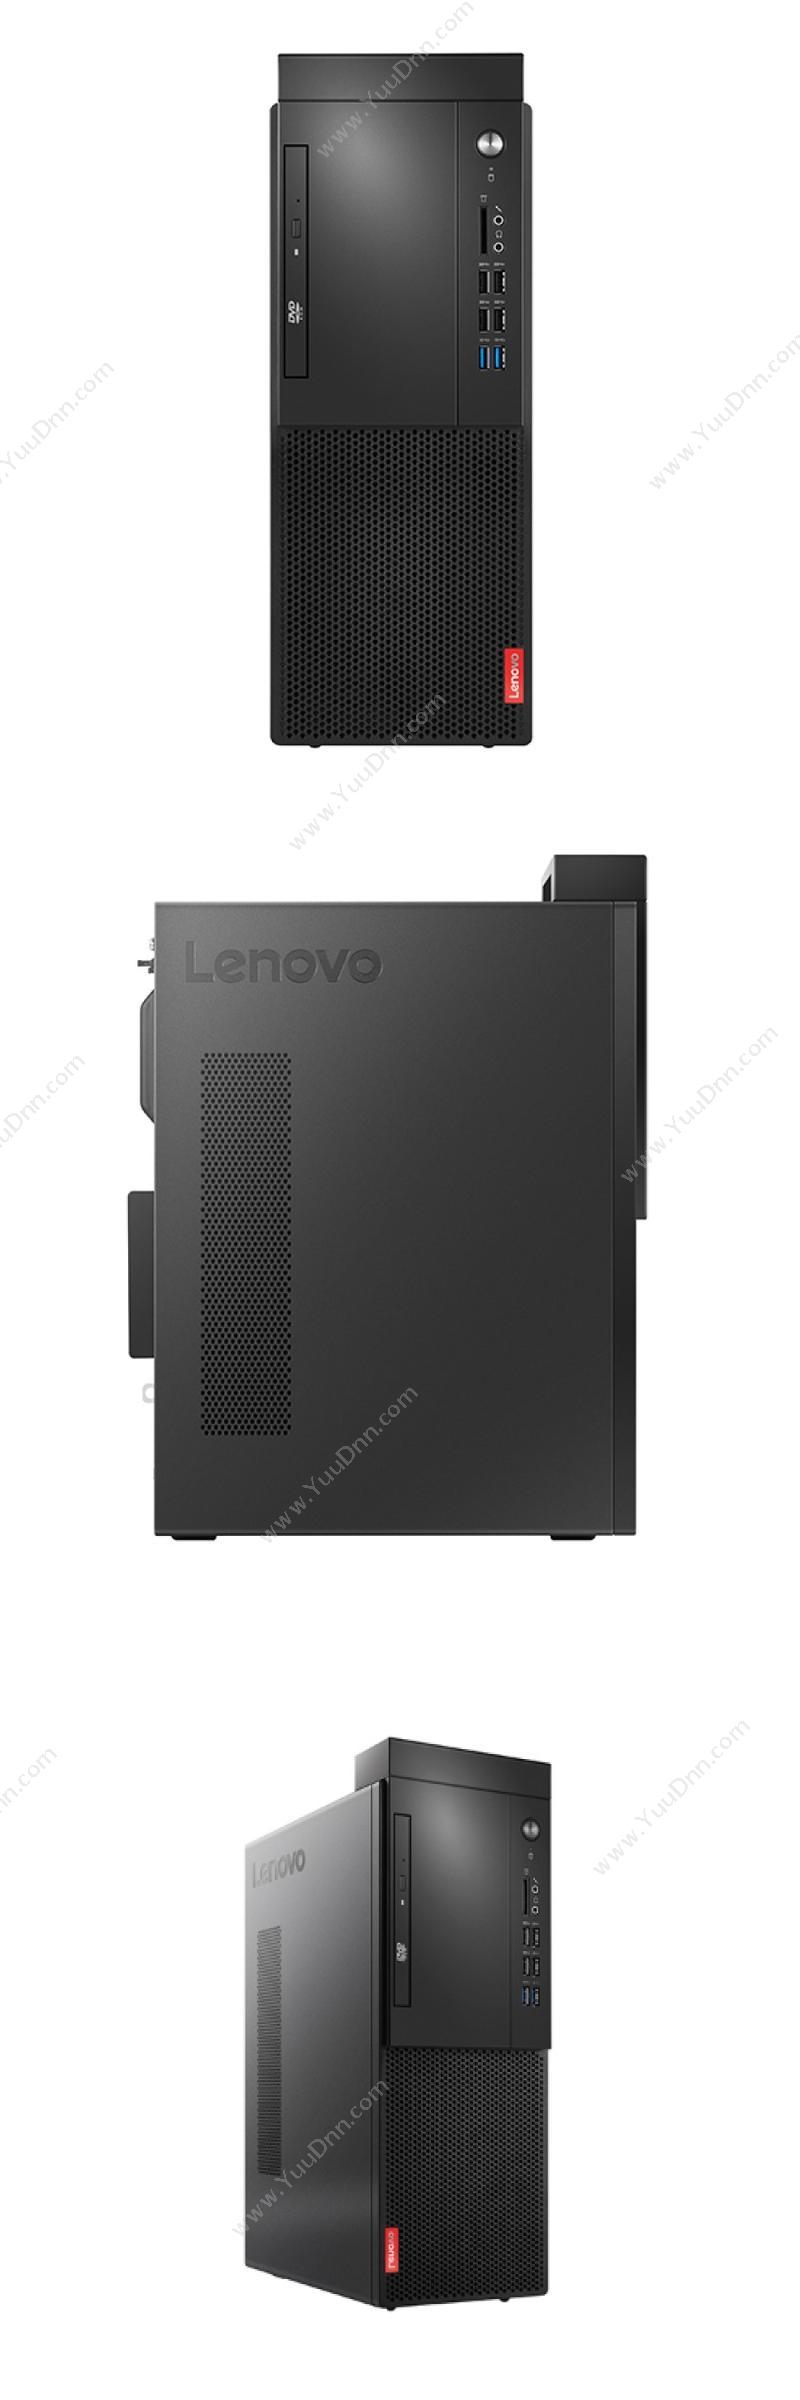 联想 Lenovo 启天M420-D166（单主机） 台式机 台式电脑套机